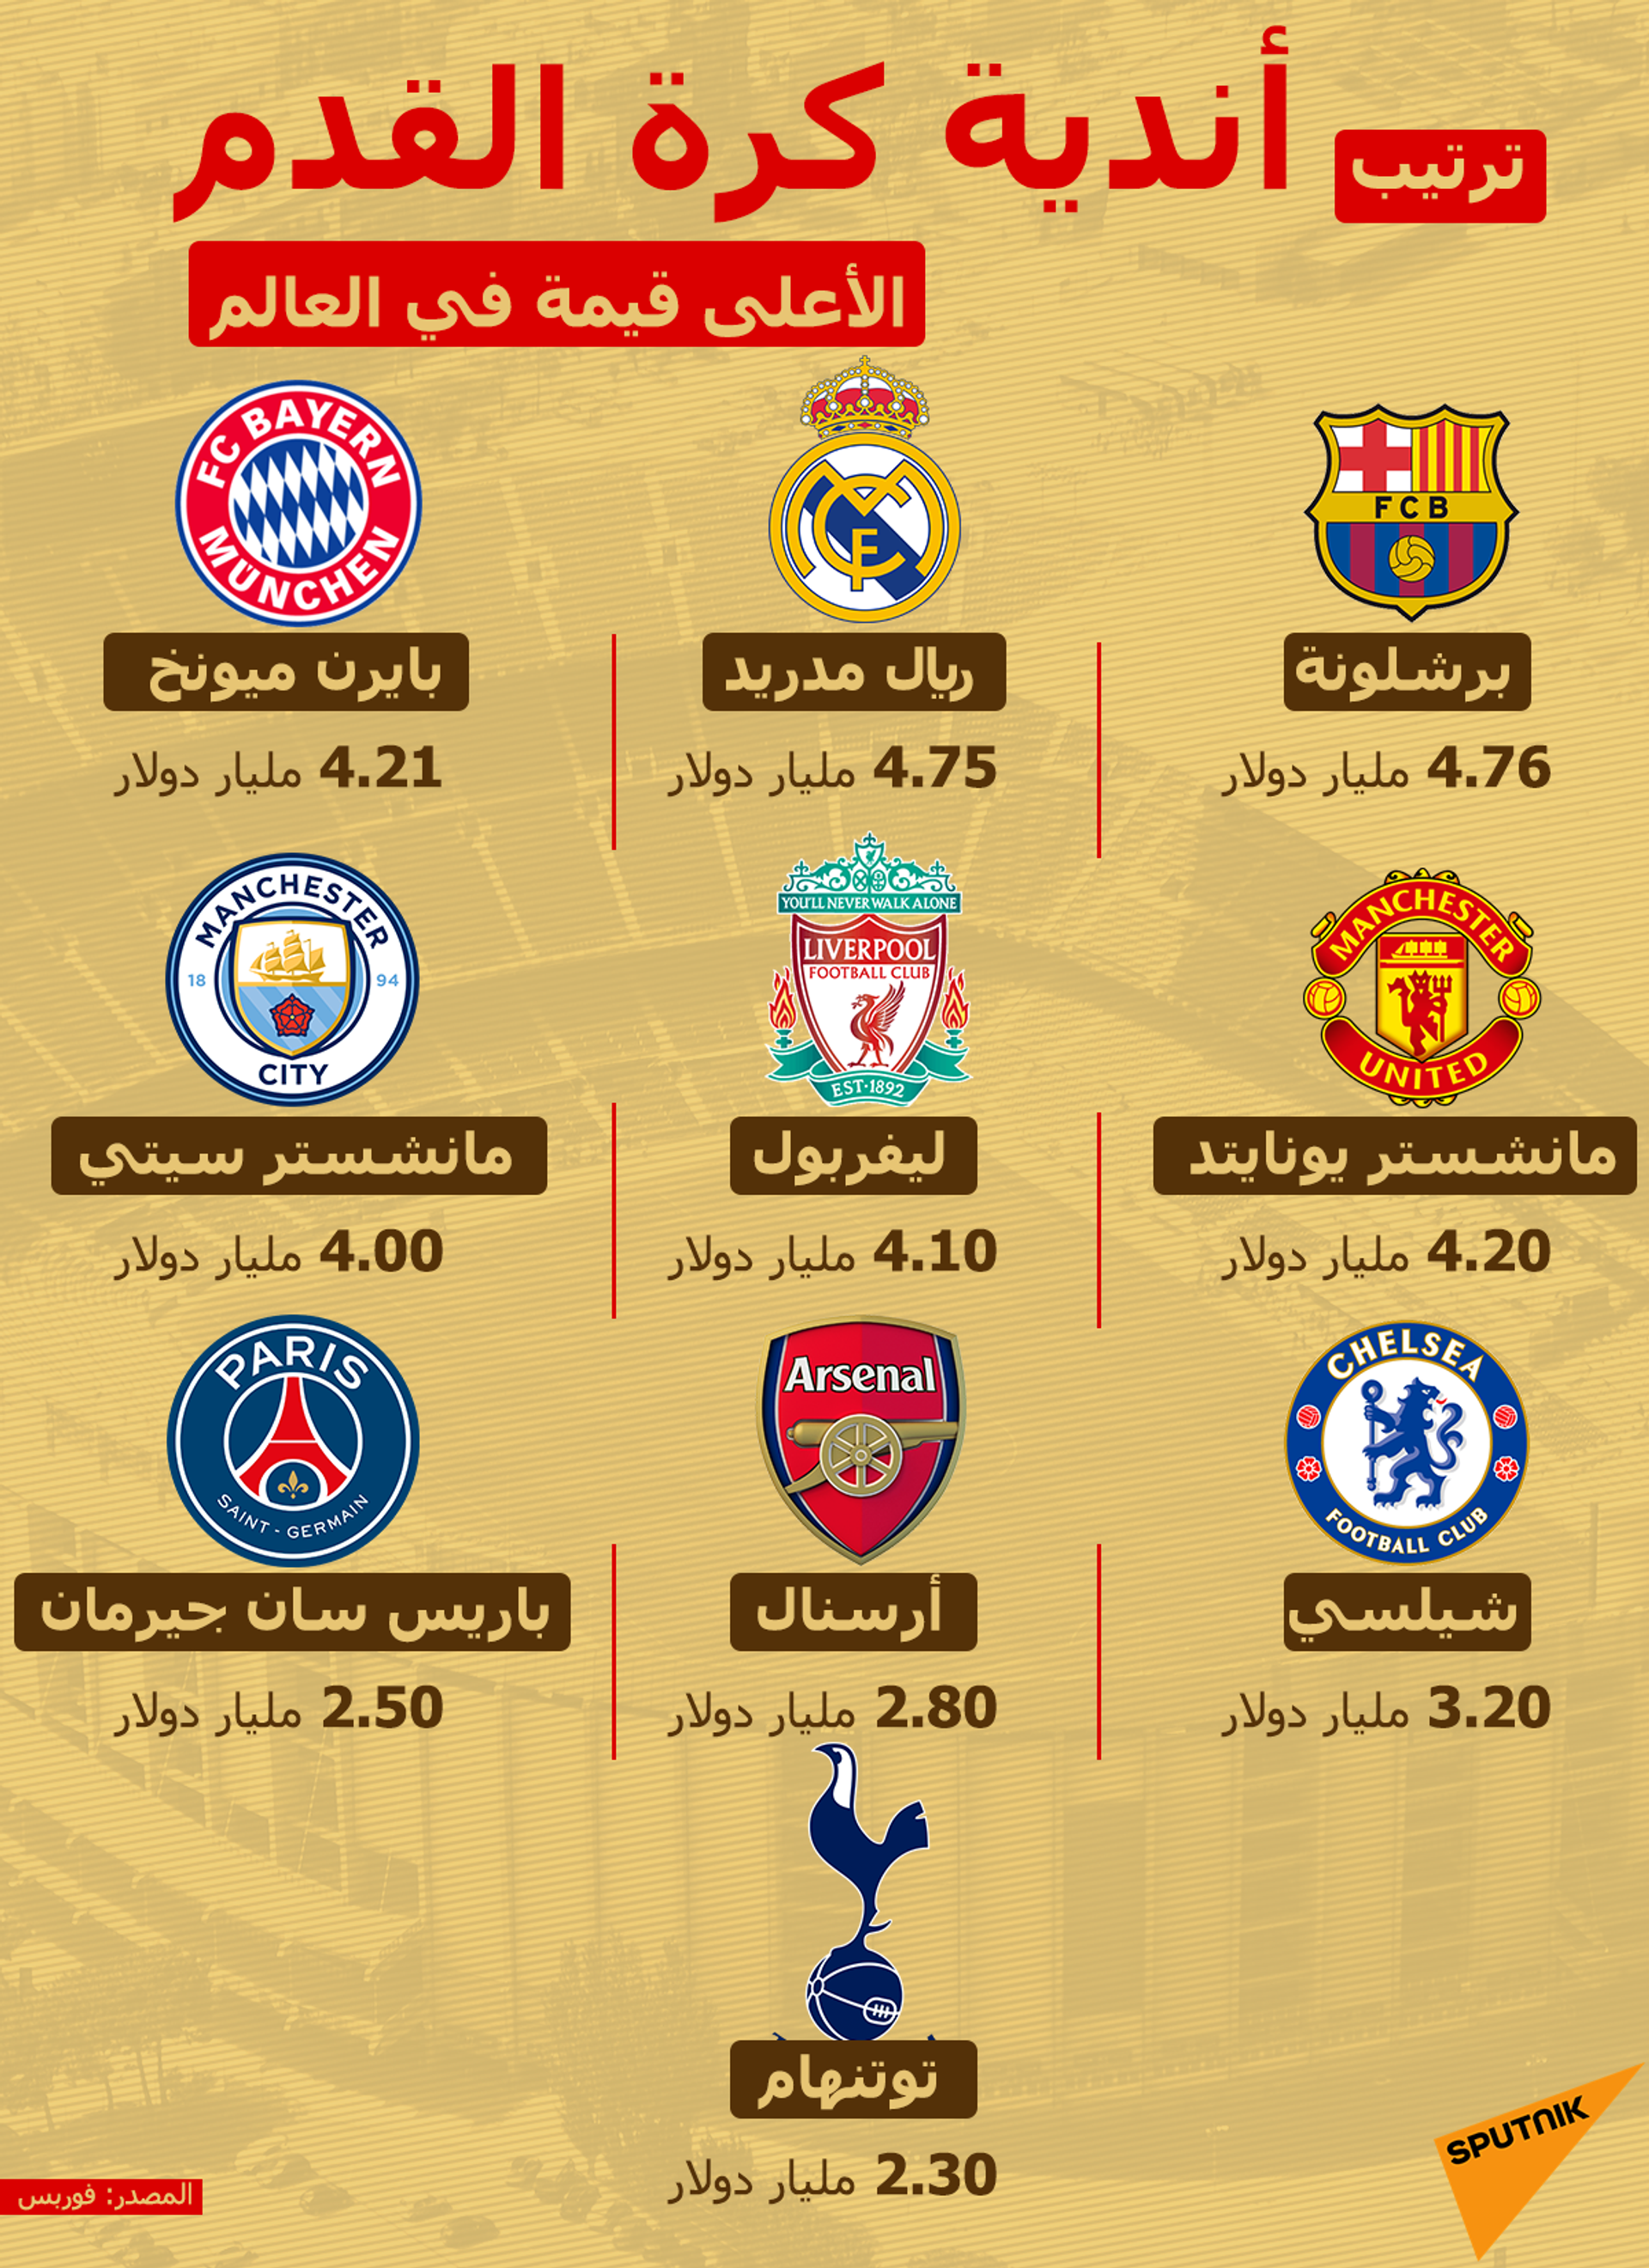 تأجيل مباراة الزمالك والمقاصة في كأس مصر - سبوتنيك عربي, 1920, 30.05.2021